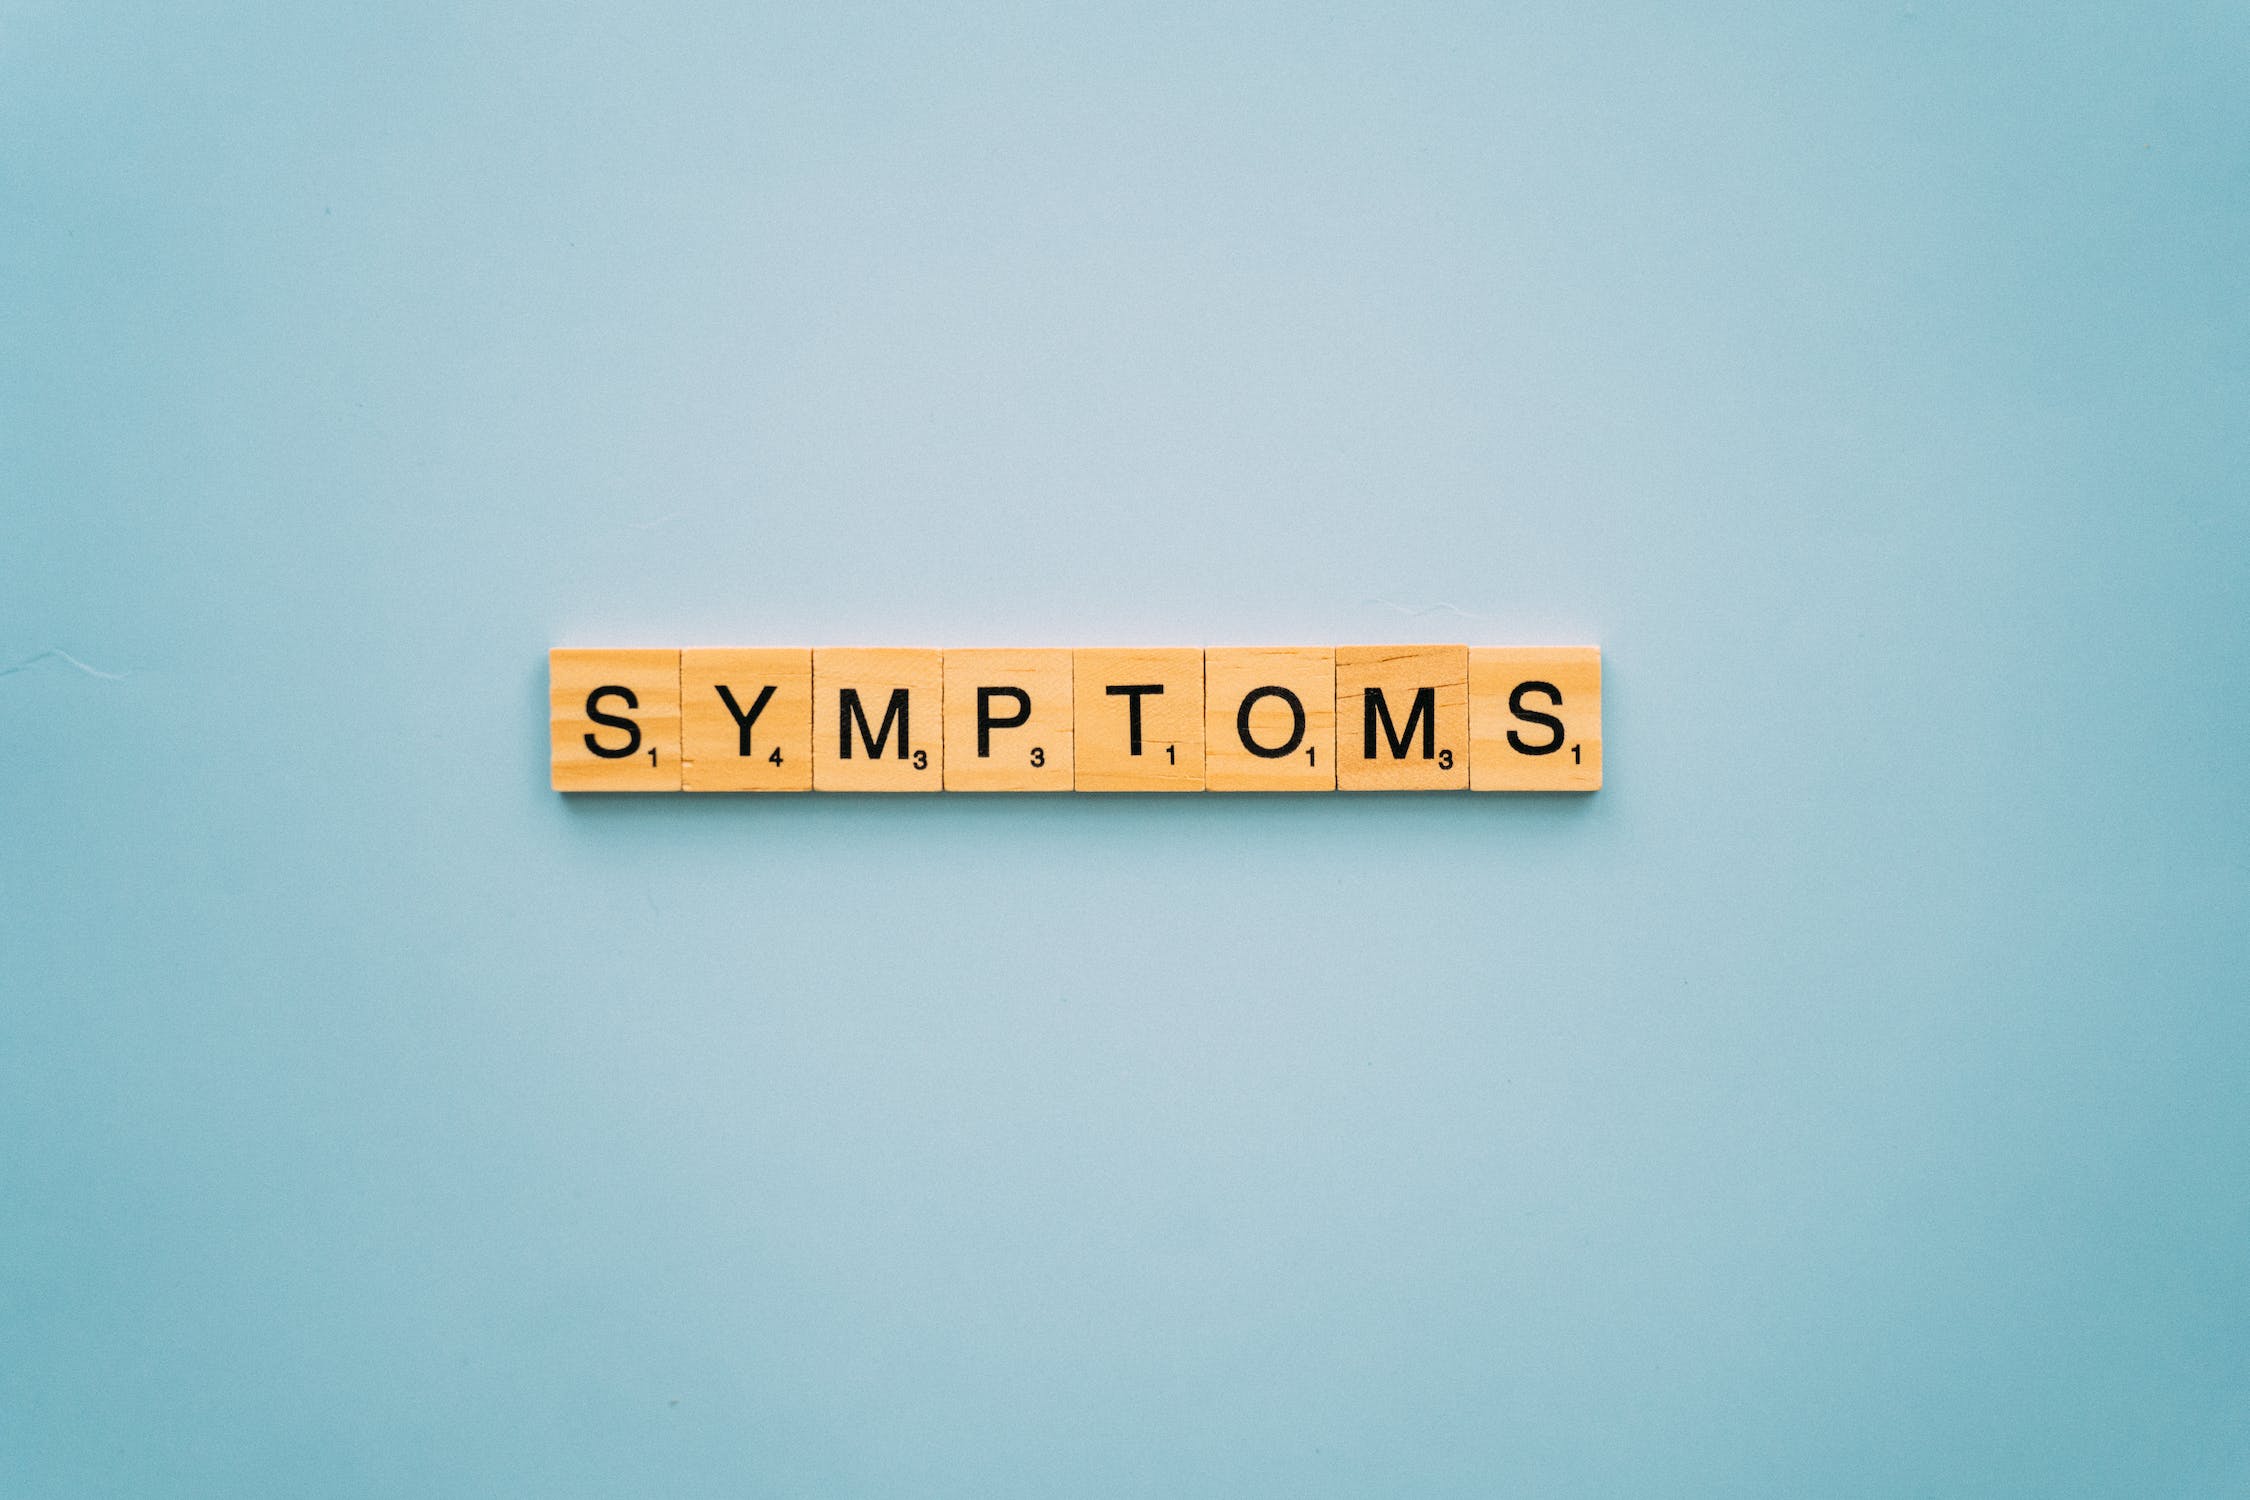 Symptoms scrabble tiles